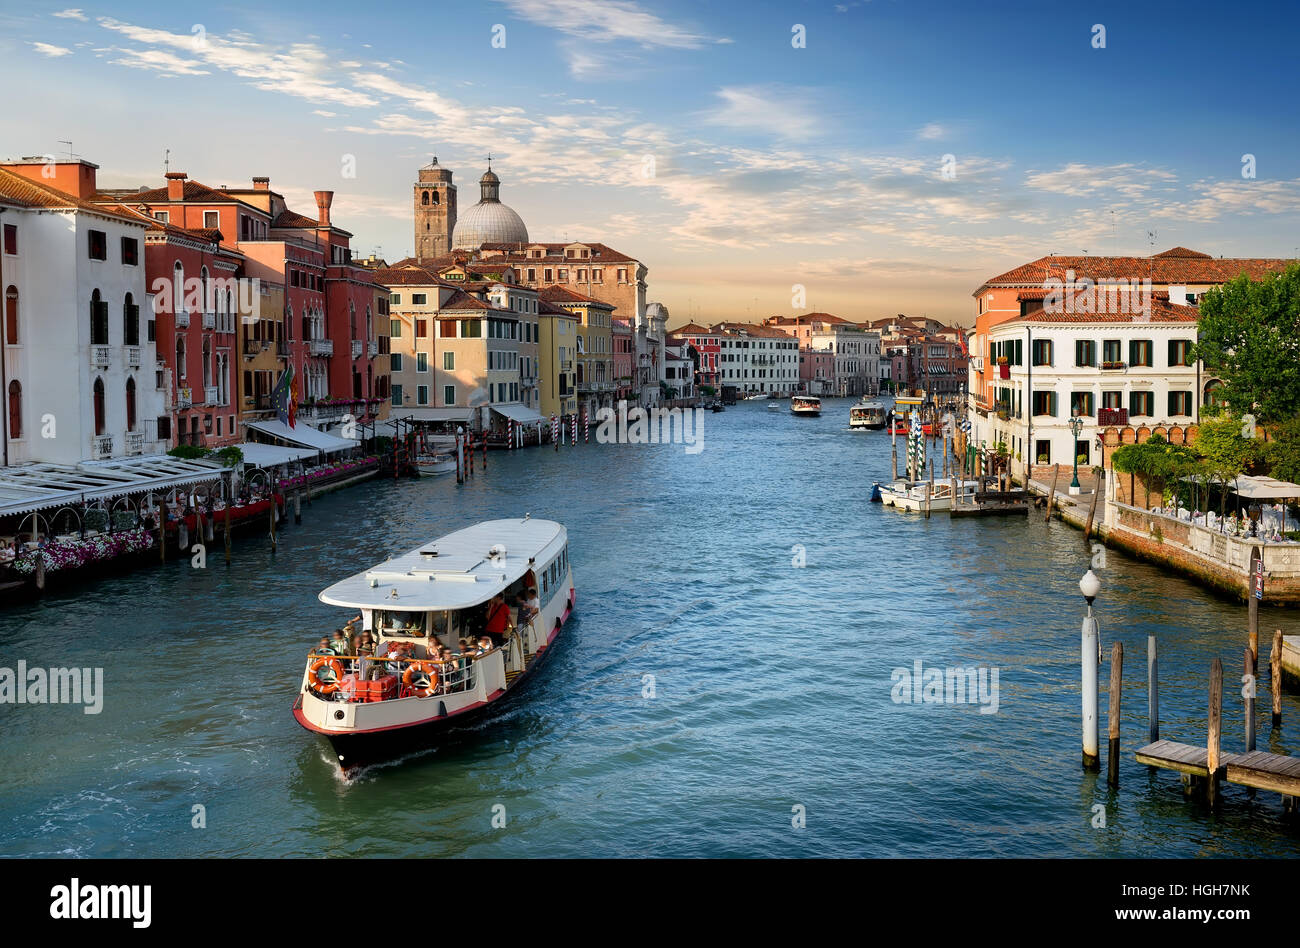 Vaporetto im Canal Grande in Venedig, Italien Stockfoto